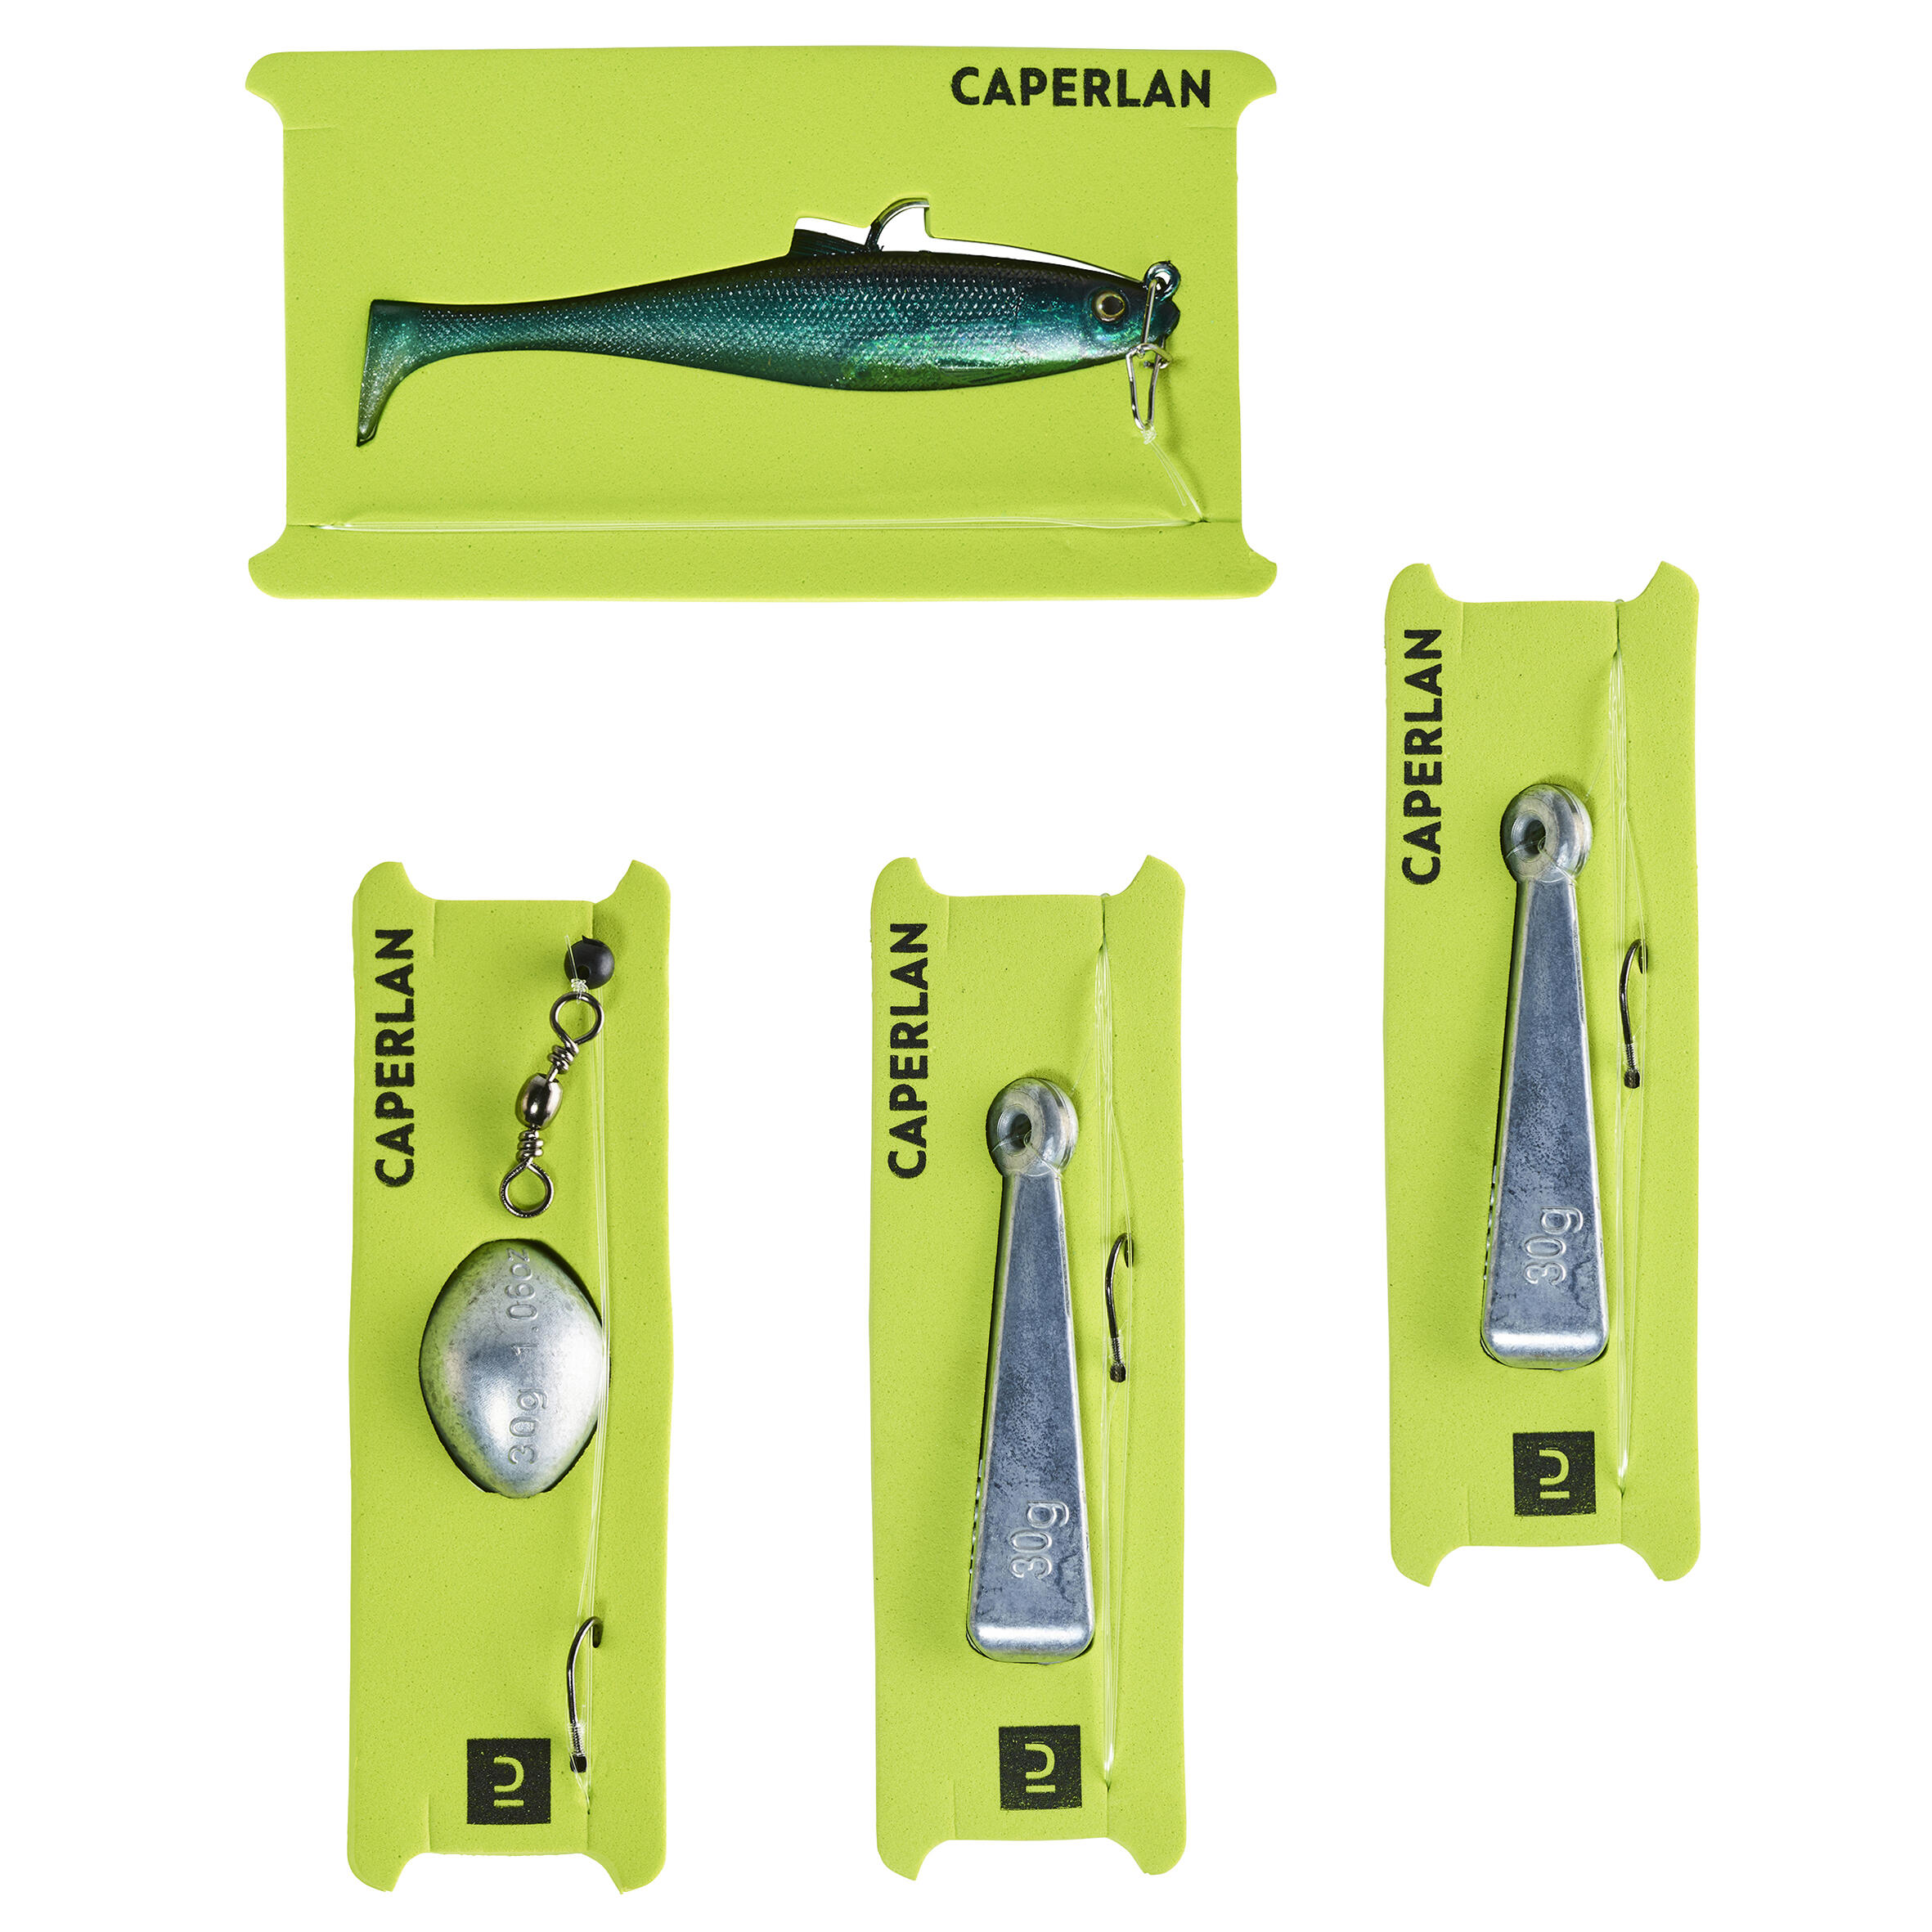 150 sea fishing starter kit - CAPERLAN